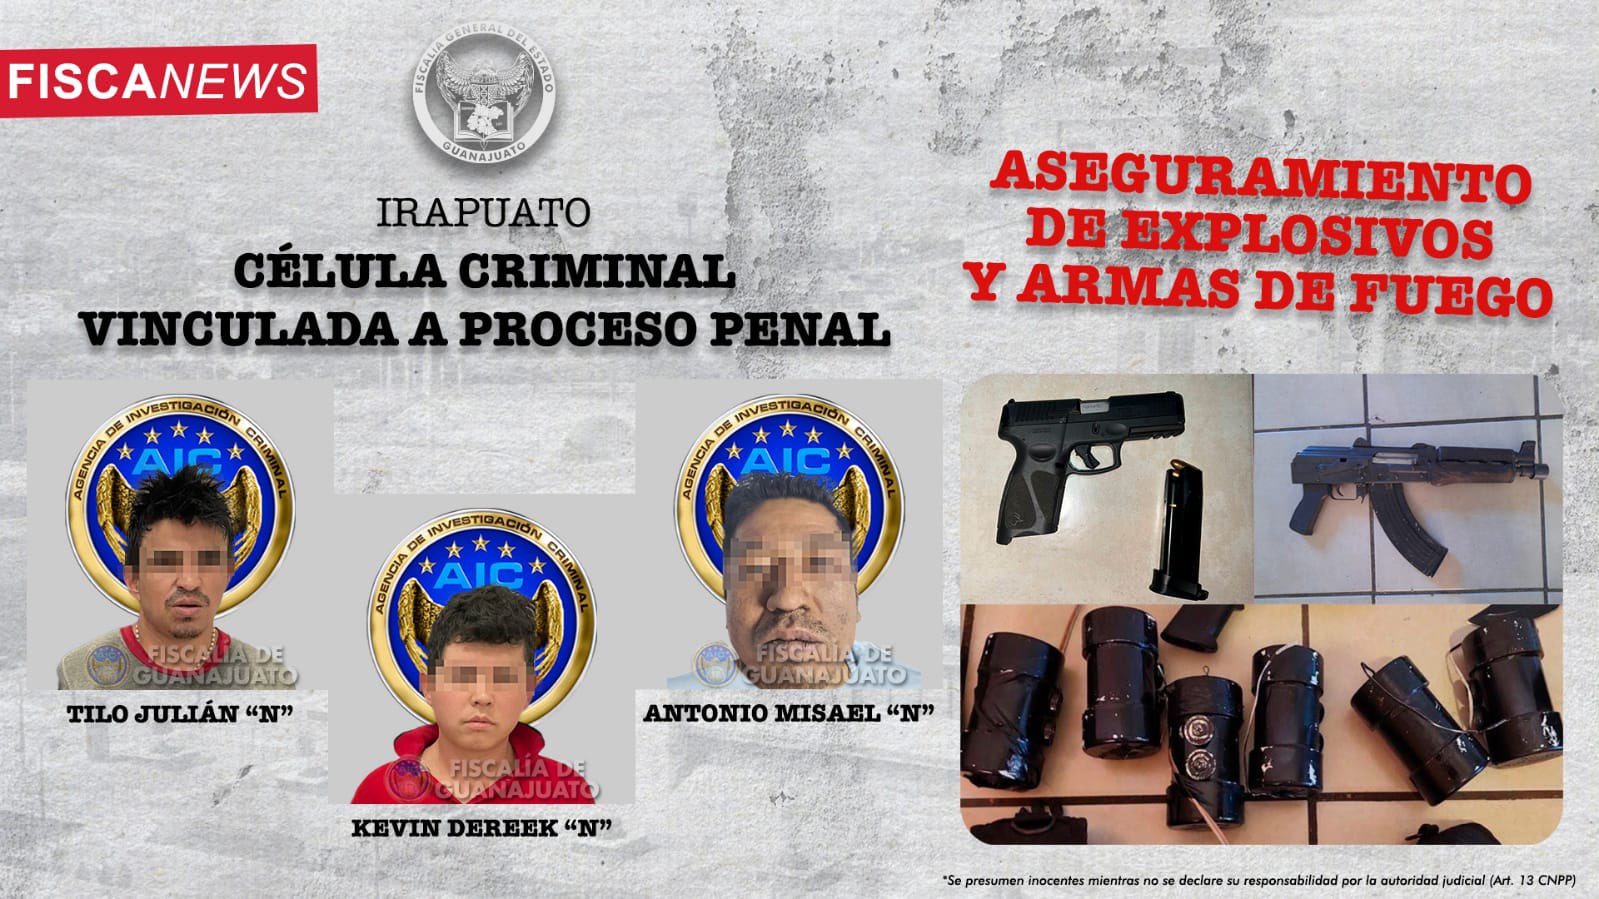 Detención de banda criminal en Irapuato: Explosivos, armas y múltiples cargos